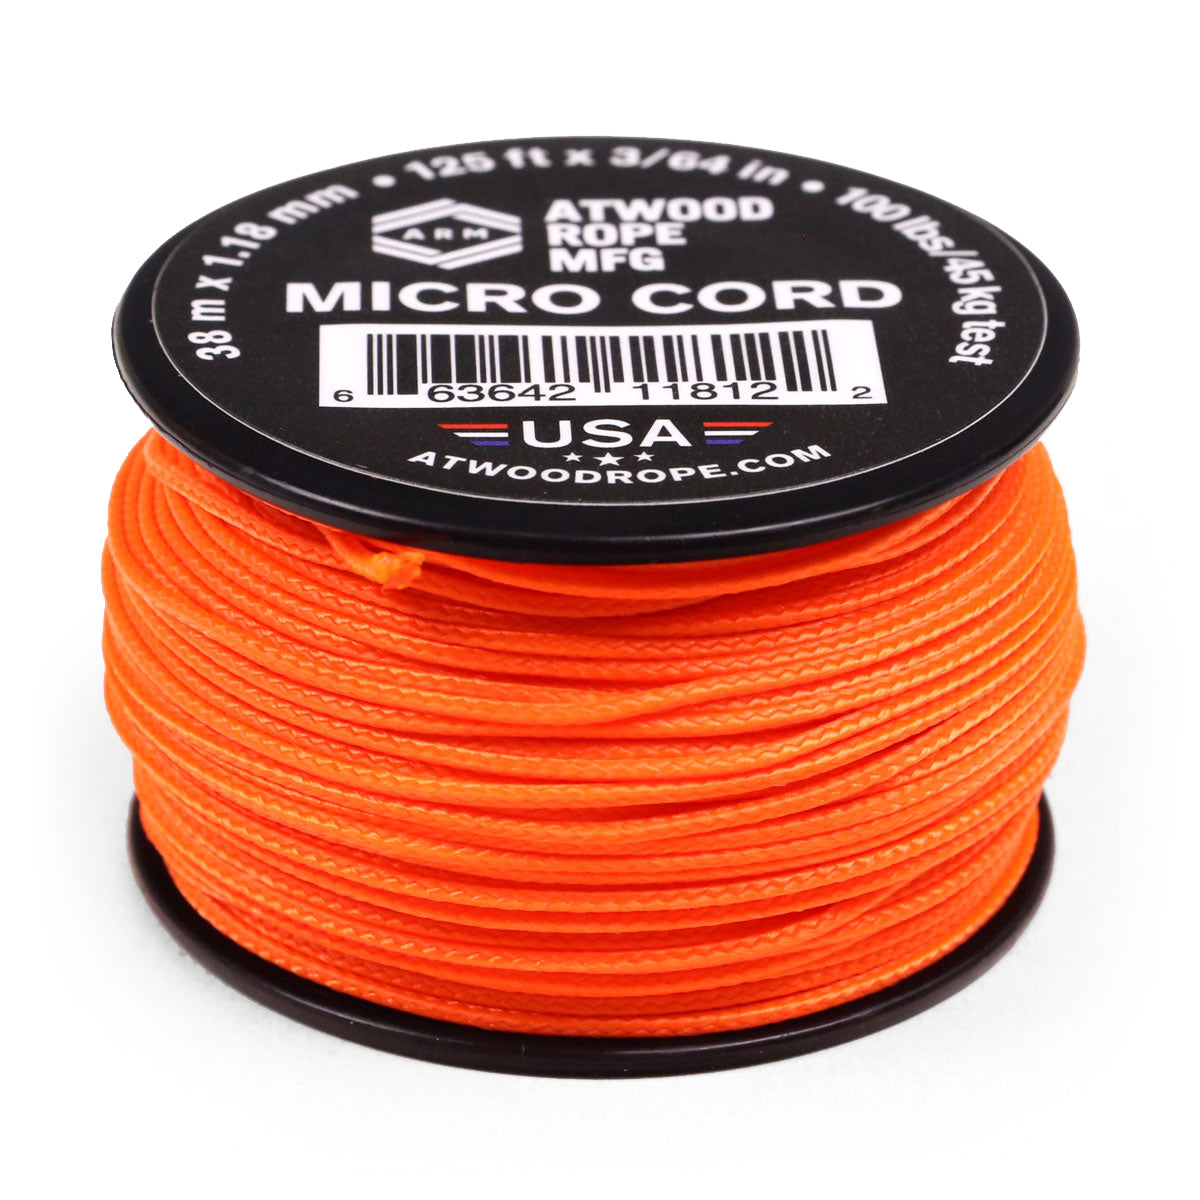 1.18mm Micro Cord - Neon Orange